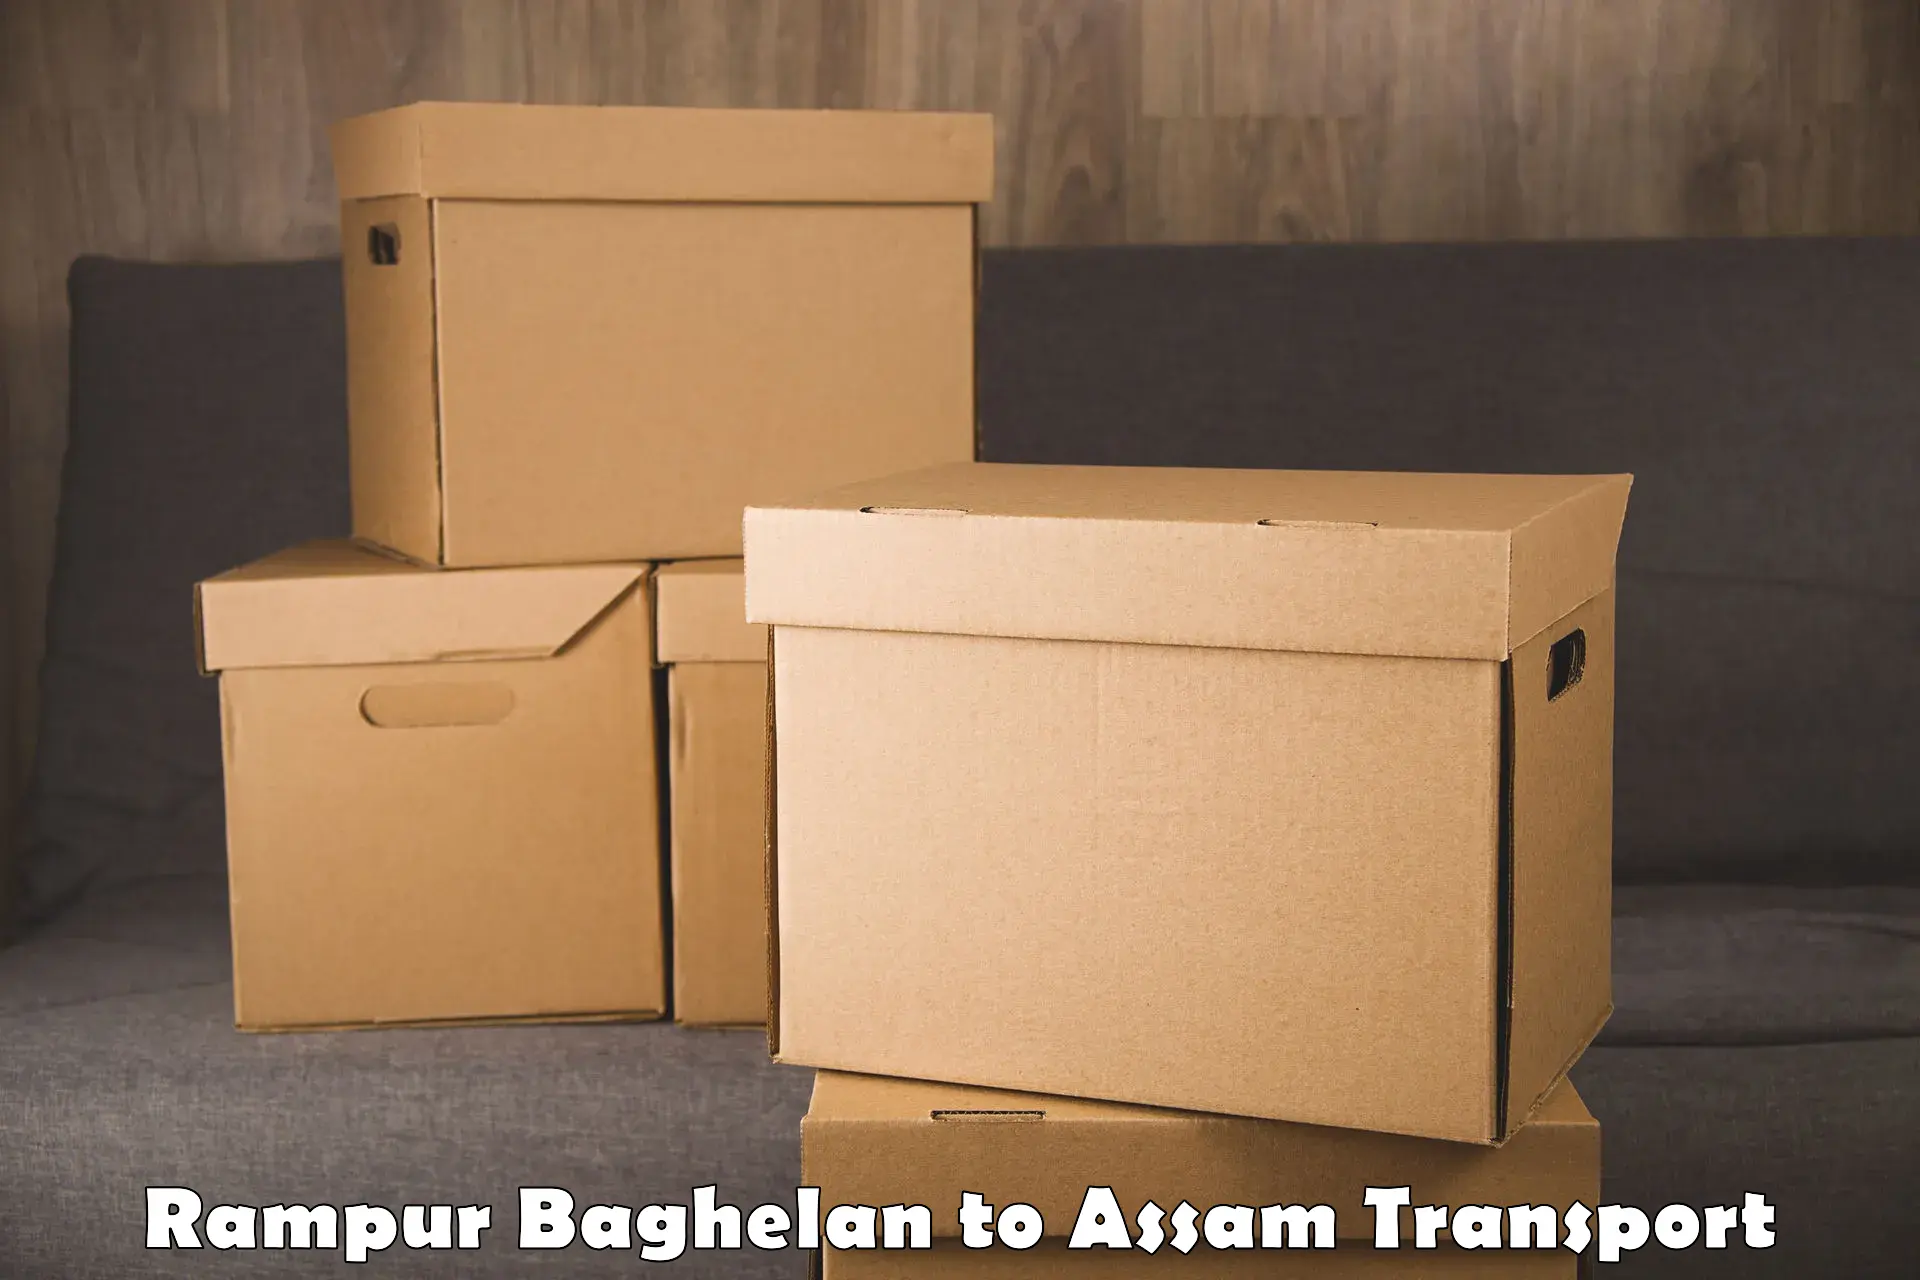 Lorry transport service Rampur Baghelan to Morigaon